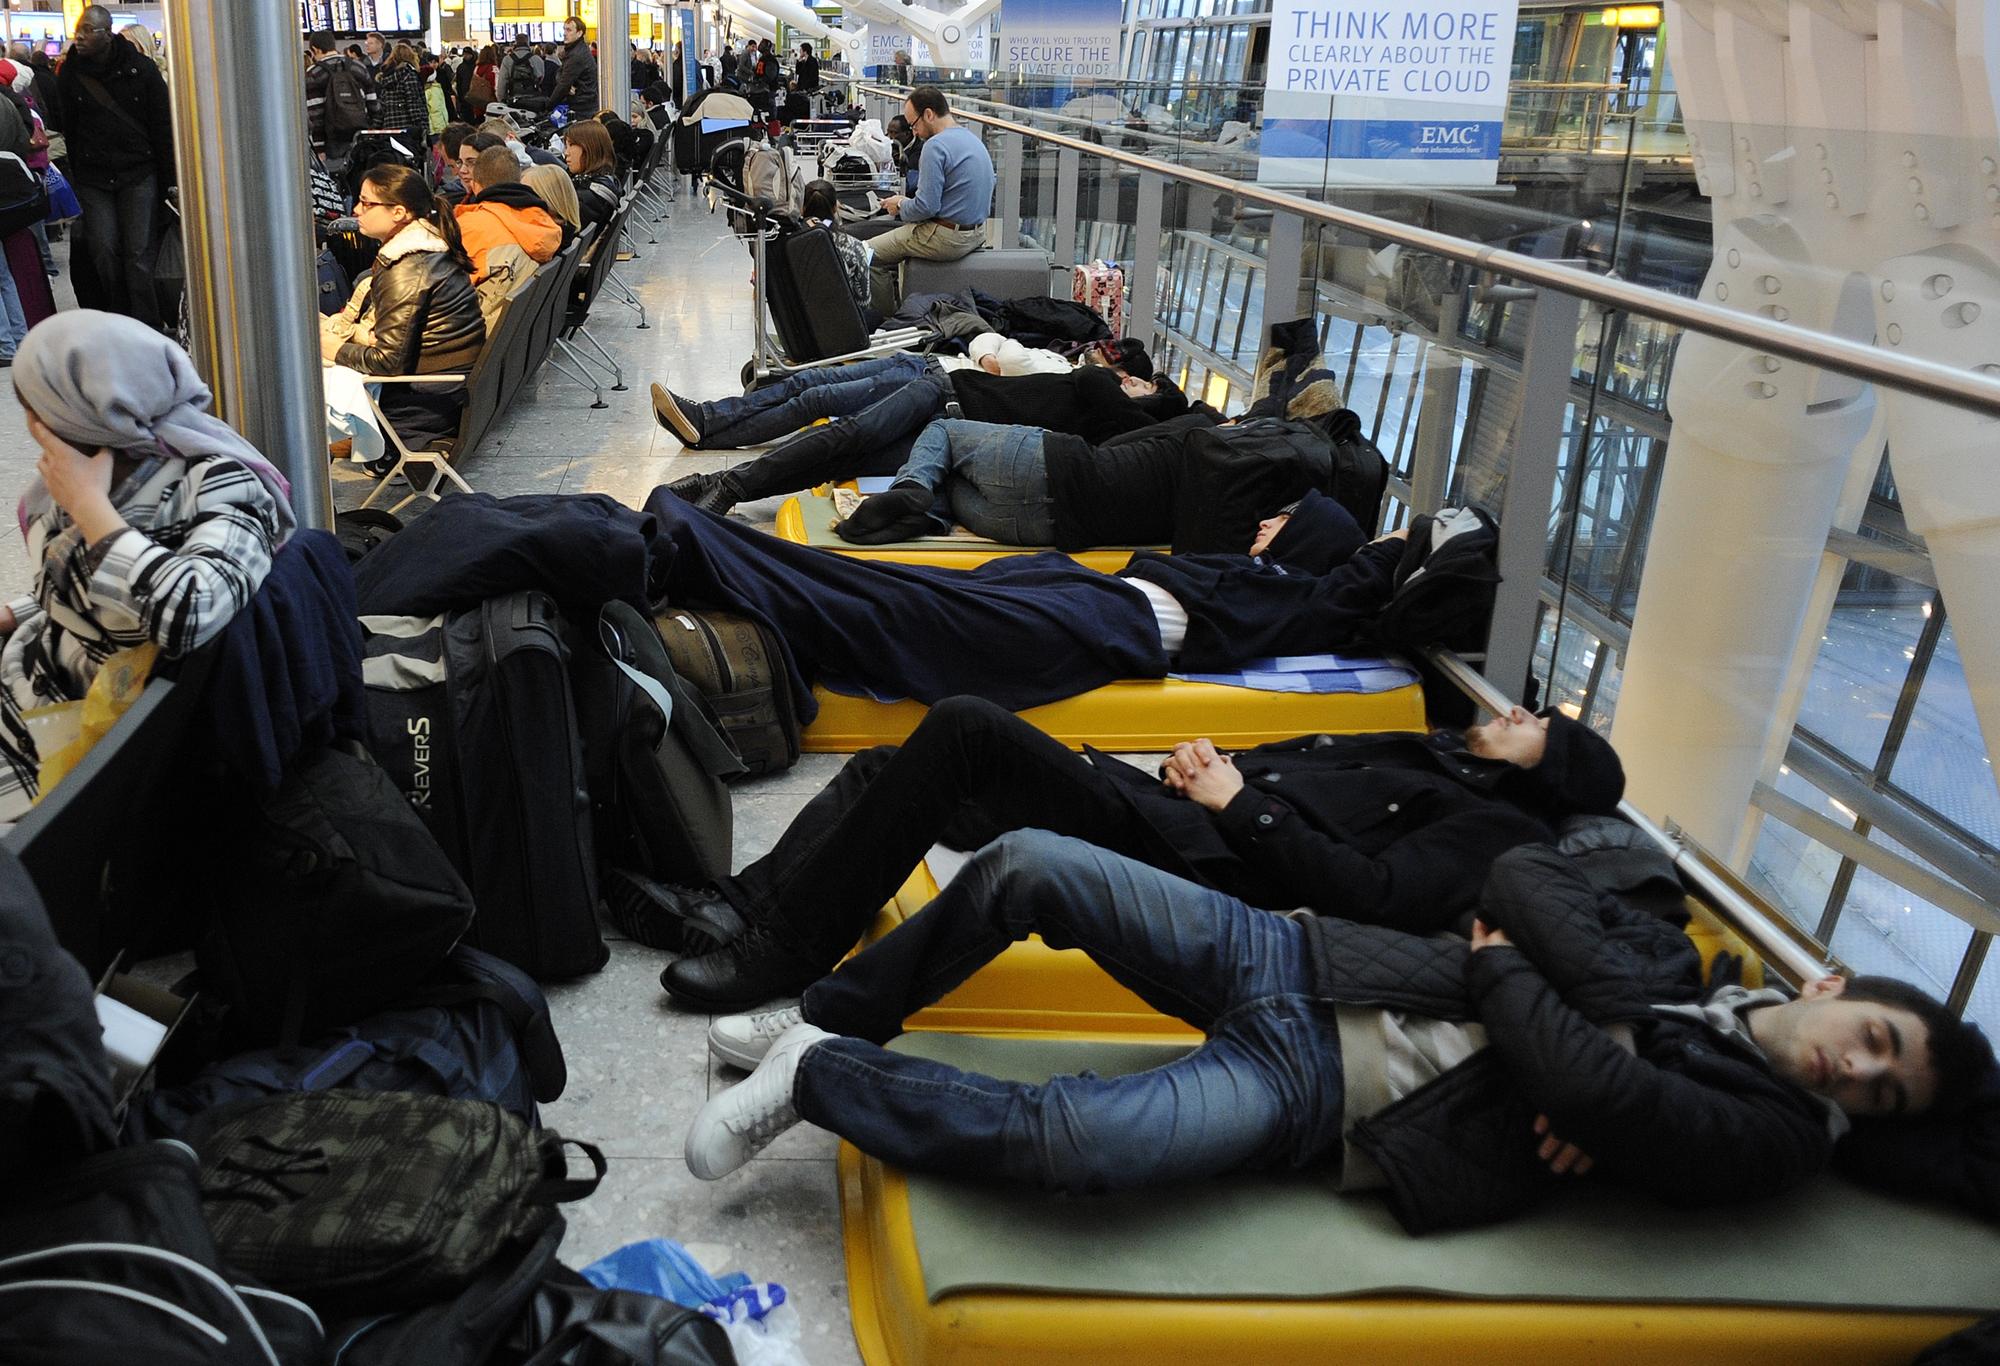 Des passagers tentent de dormir sur des lits improvisés dans le terminal 5 de l'aéroport d'Heathrow, à Londres. [Toby Melville]